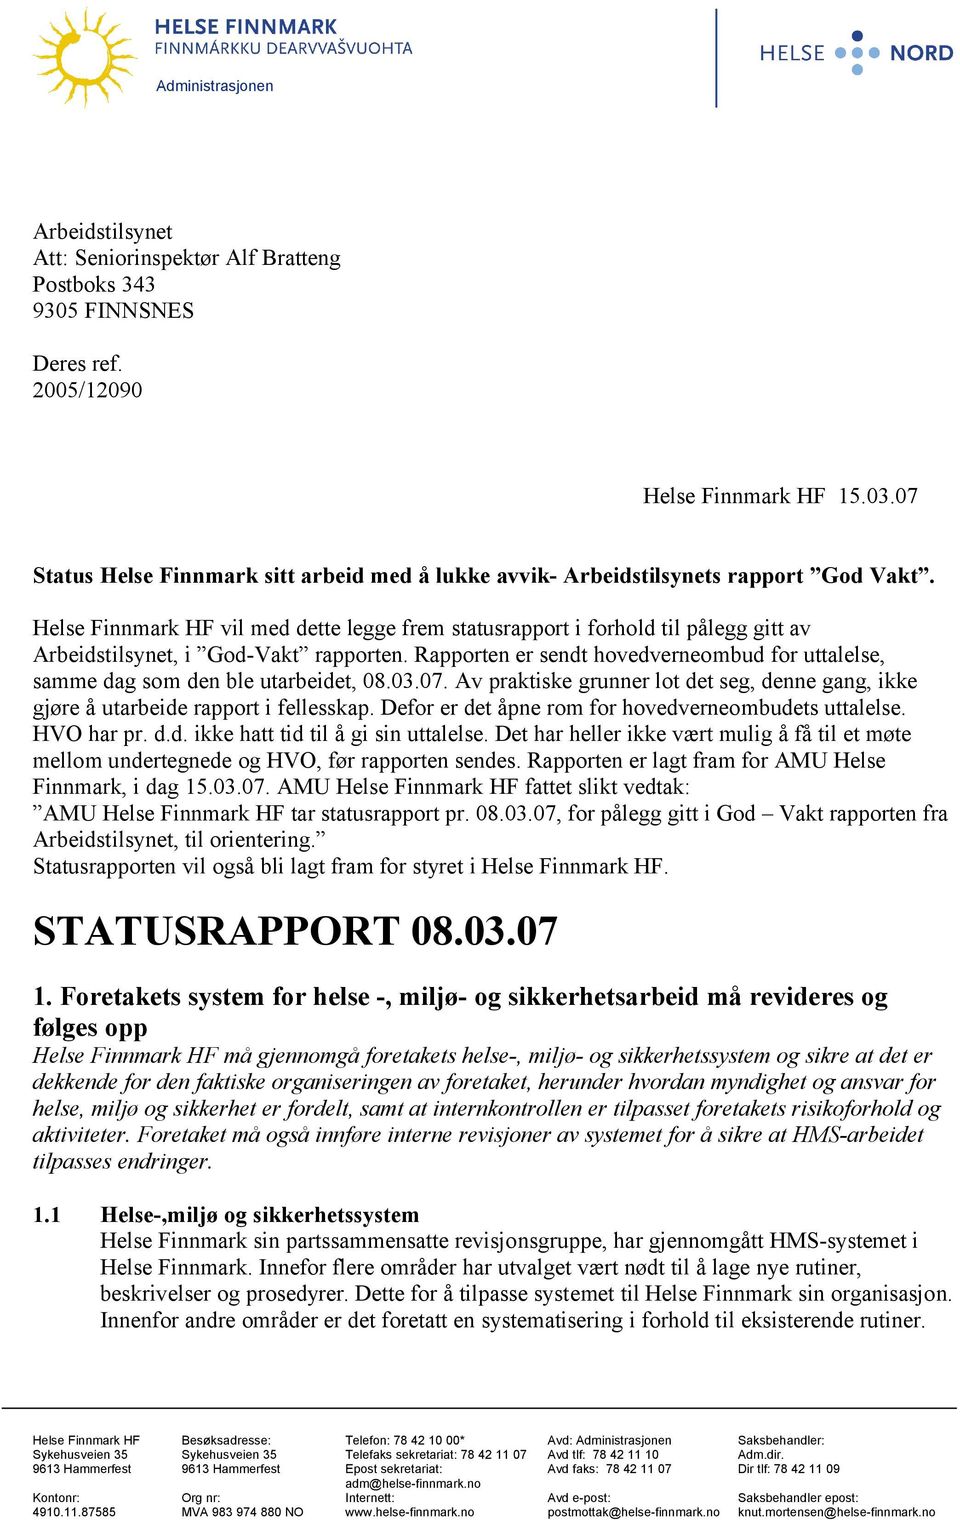 Helse Finnmark HF vil med dette legge frem statusrapport i forhold til pålegg gitt av Arbeidstilsynet, i God-Vakt rapporten.